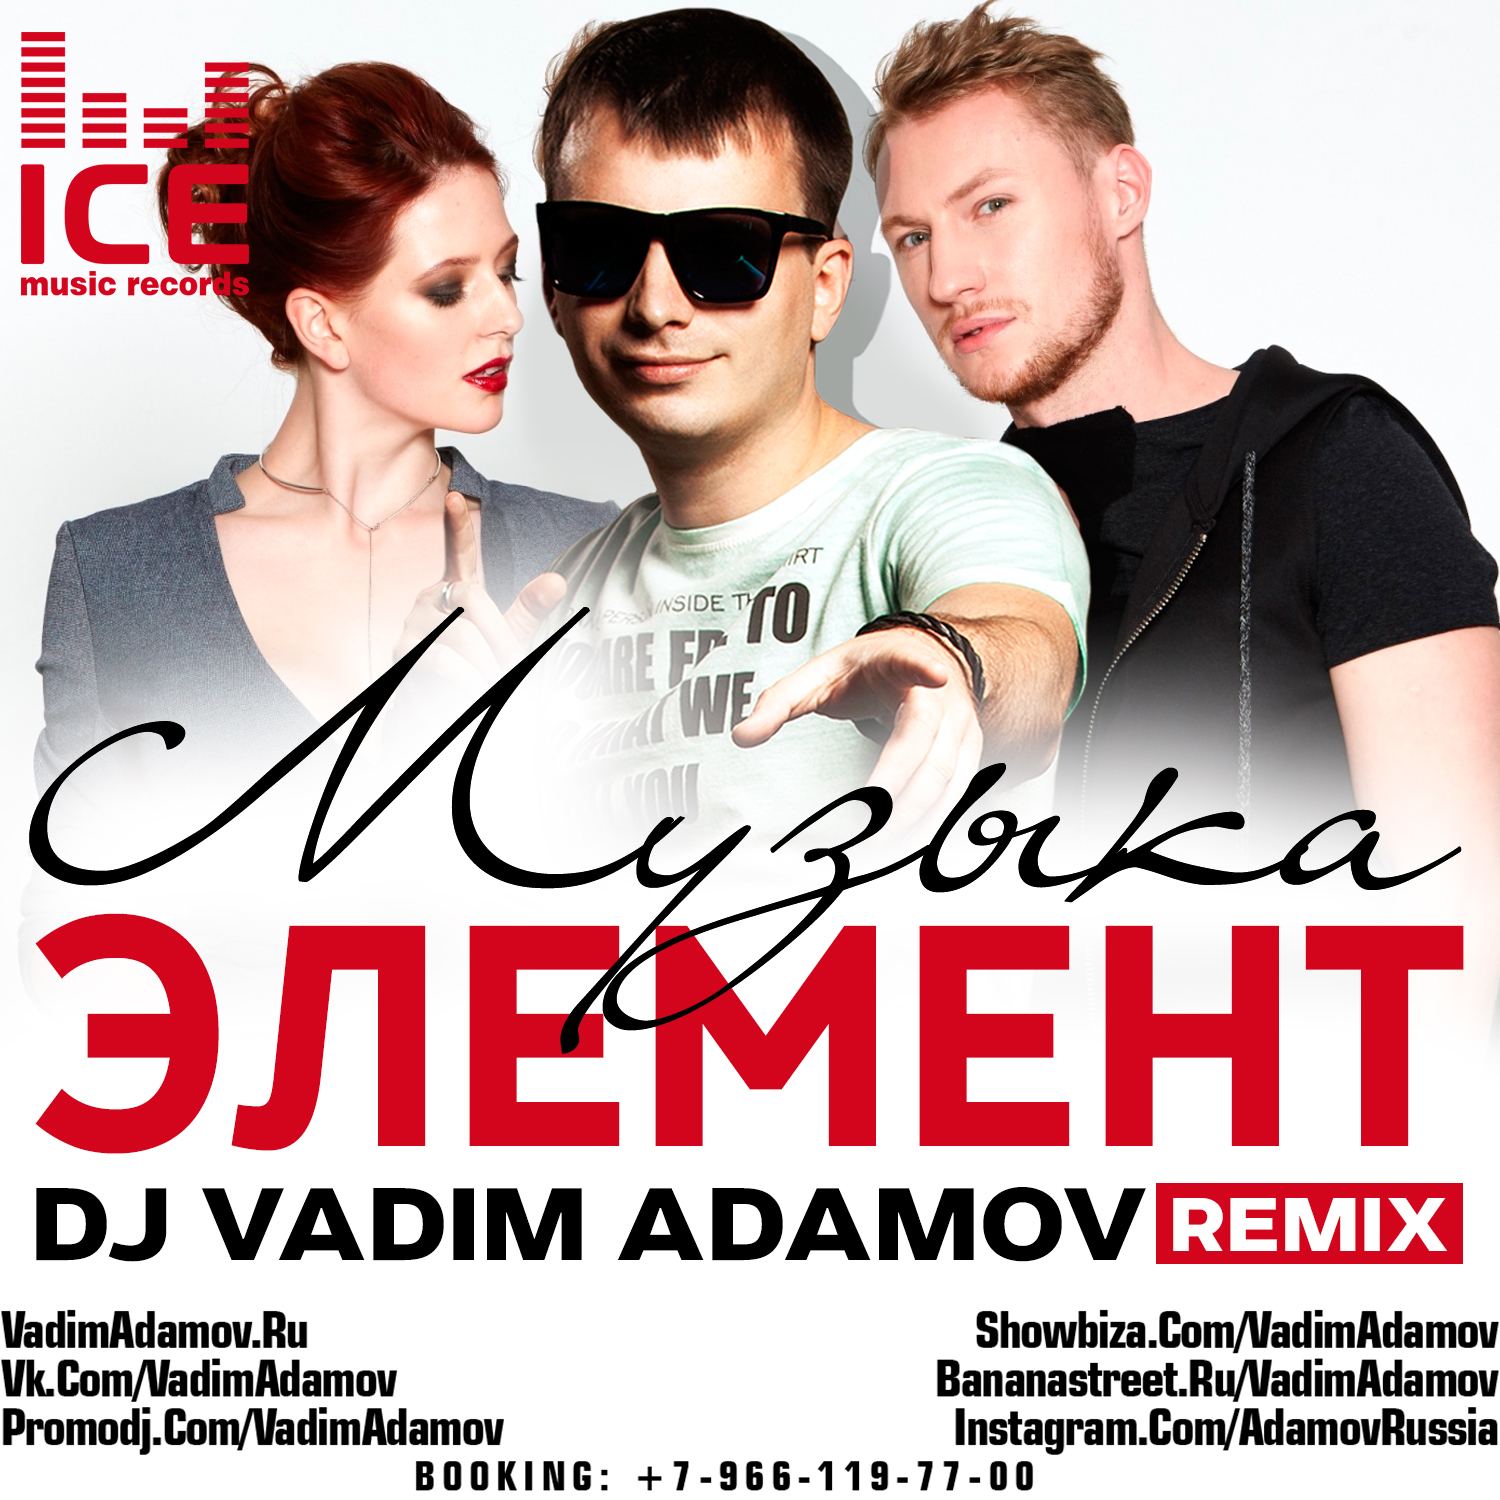 Элемент песни слушать. Элементы музыки. DJ Vadim Adamov Remix. Элементы песни. Элементы в песне.